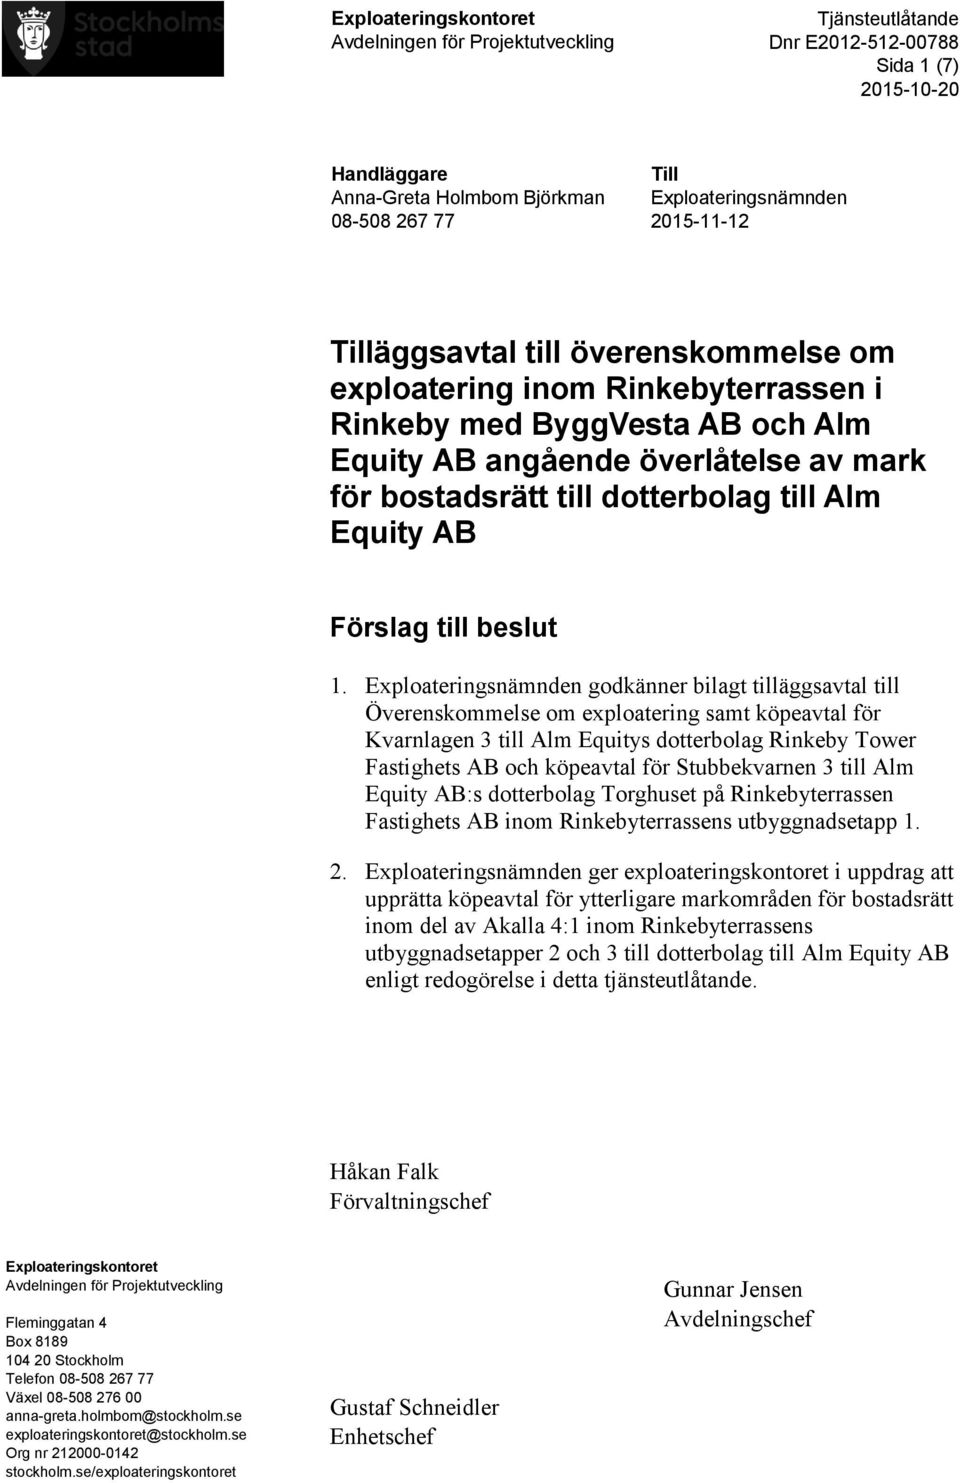 Exploateringsnämnden godkänner bilagt tilläggsavtal till Överenskommelse om exploatering samt köpeavtal för Kvarnlagen 3 till Alm Equitys dotterbolag Rinkeby Tower Fastighets AB och köpeavtal för